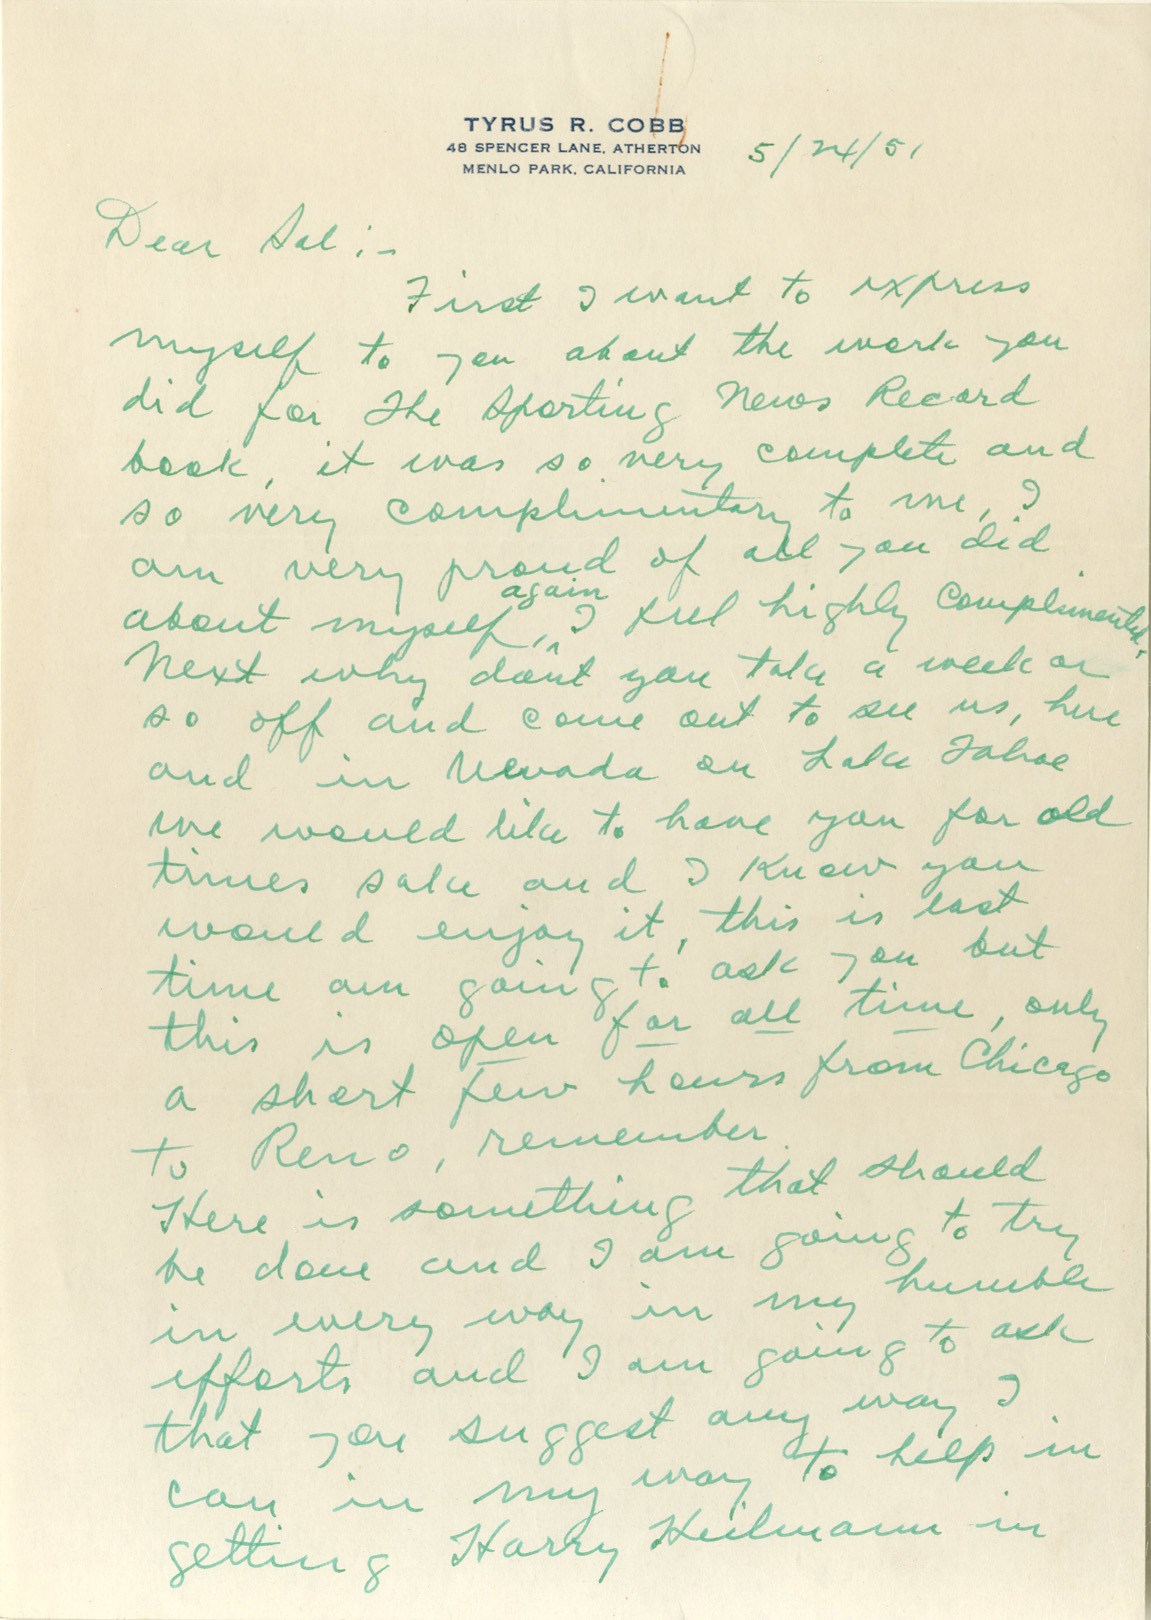 - 1951 Ty Cobb Handwritten Letter Lobbying for Harry Heilmann's Hall of Fame Induction (by Legendary Sportswriter H.G. Salsinger)